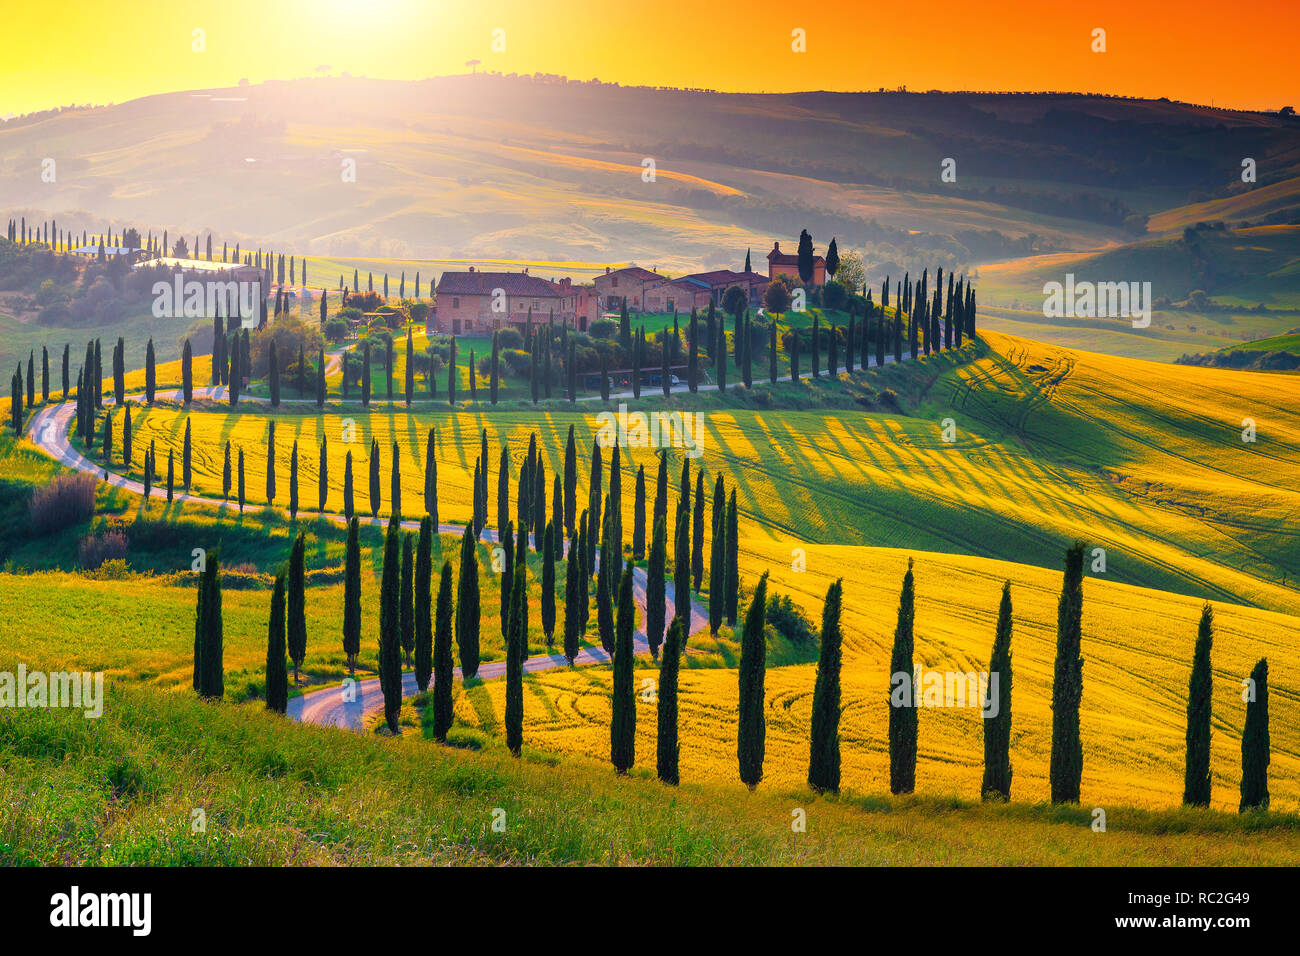 Berühmte beliebte Reise und Fotografie statt. Majestic bunten Sonnenuntergang und landwirtschaftlichen Bereich mit typischen Toskana Häuser aus Stein auf dem Hügel, in der Nähe von Siena Stockfoto